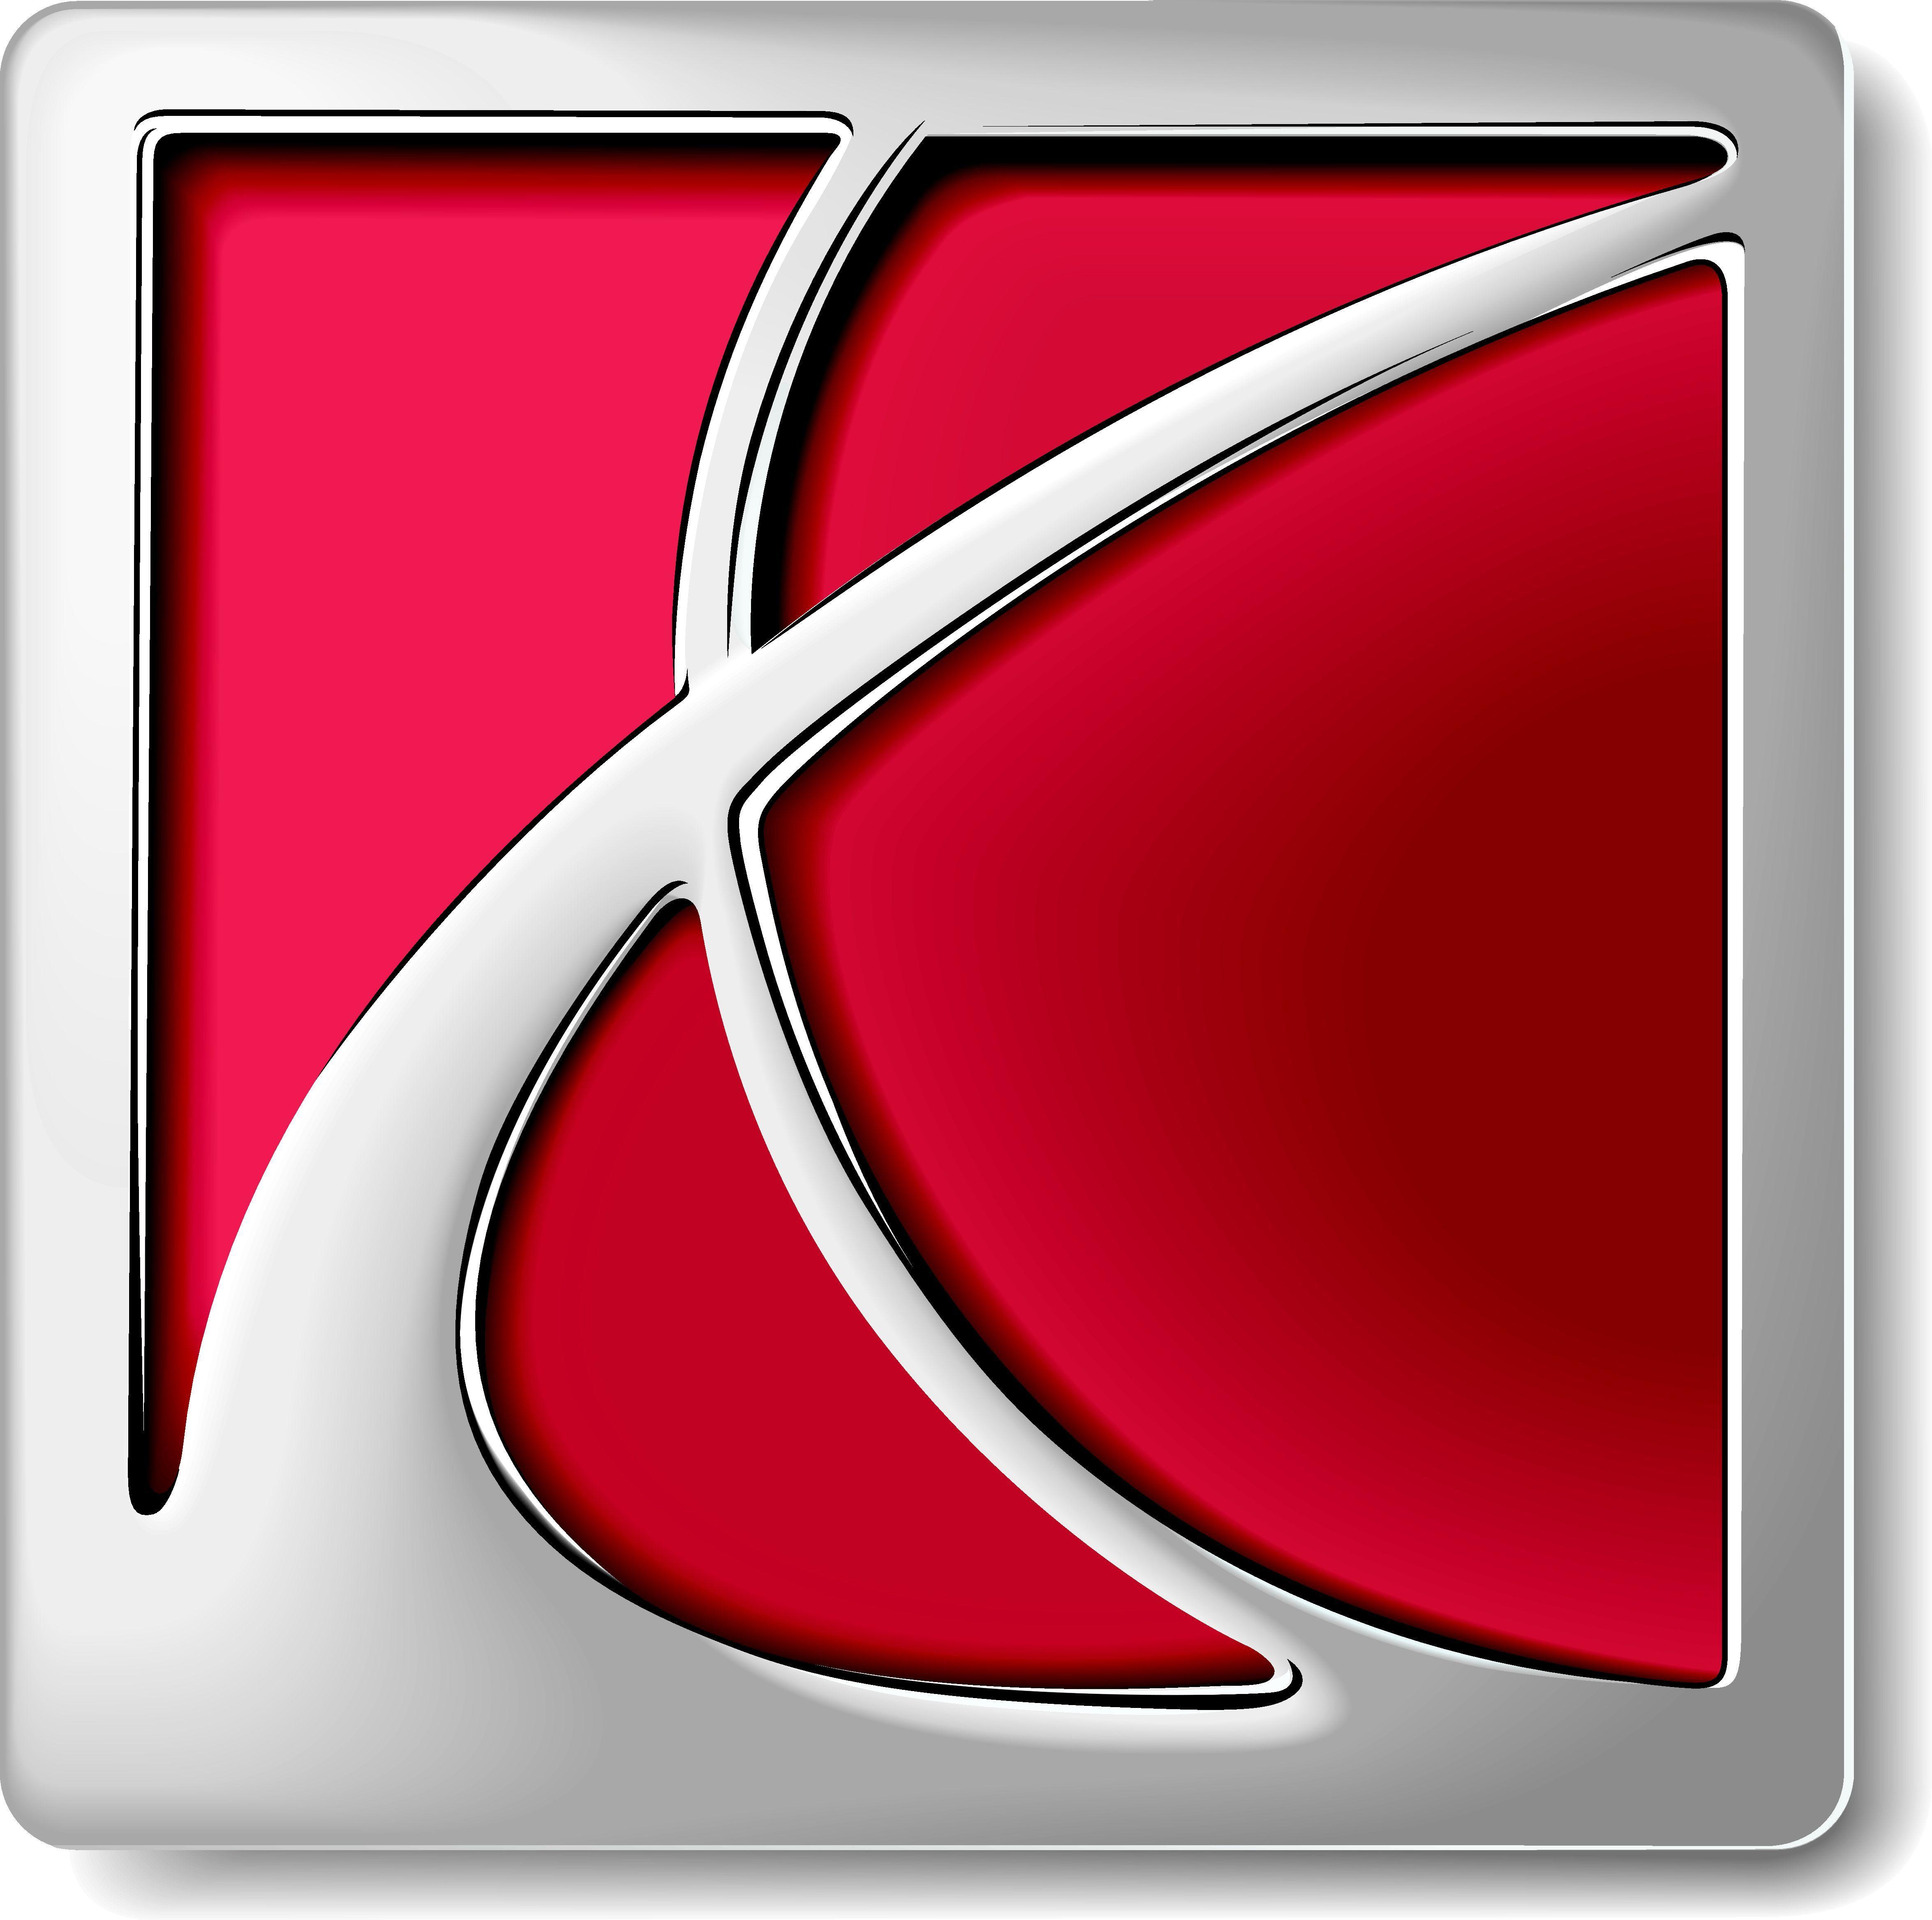 Saturn Car Logo - logo. Cars, Car logos, Logos